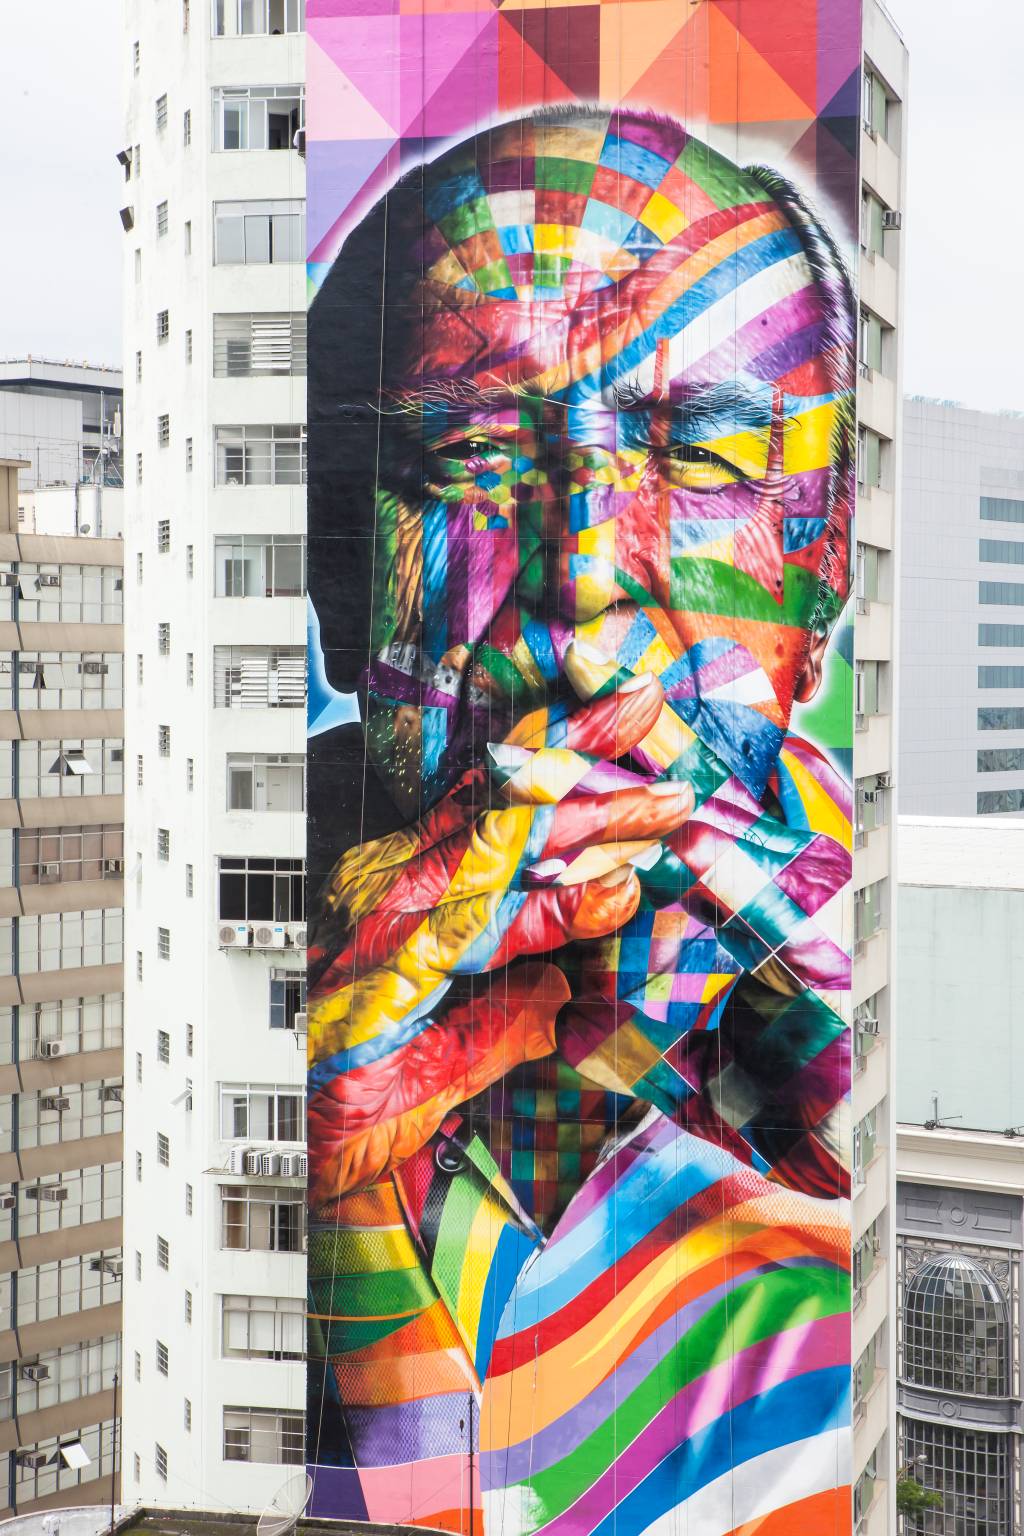 Mural de Oscar Niemeyer feito por Eduardo Kobra em janeiro de 2013, no aniversário de São Paulo: artista busca patrocínio para restauro do mural localizado na Avenida Paulista.